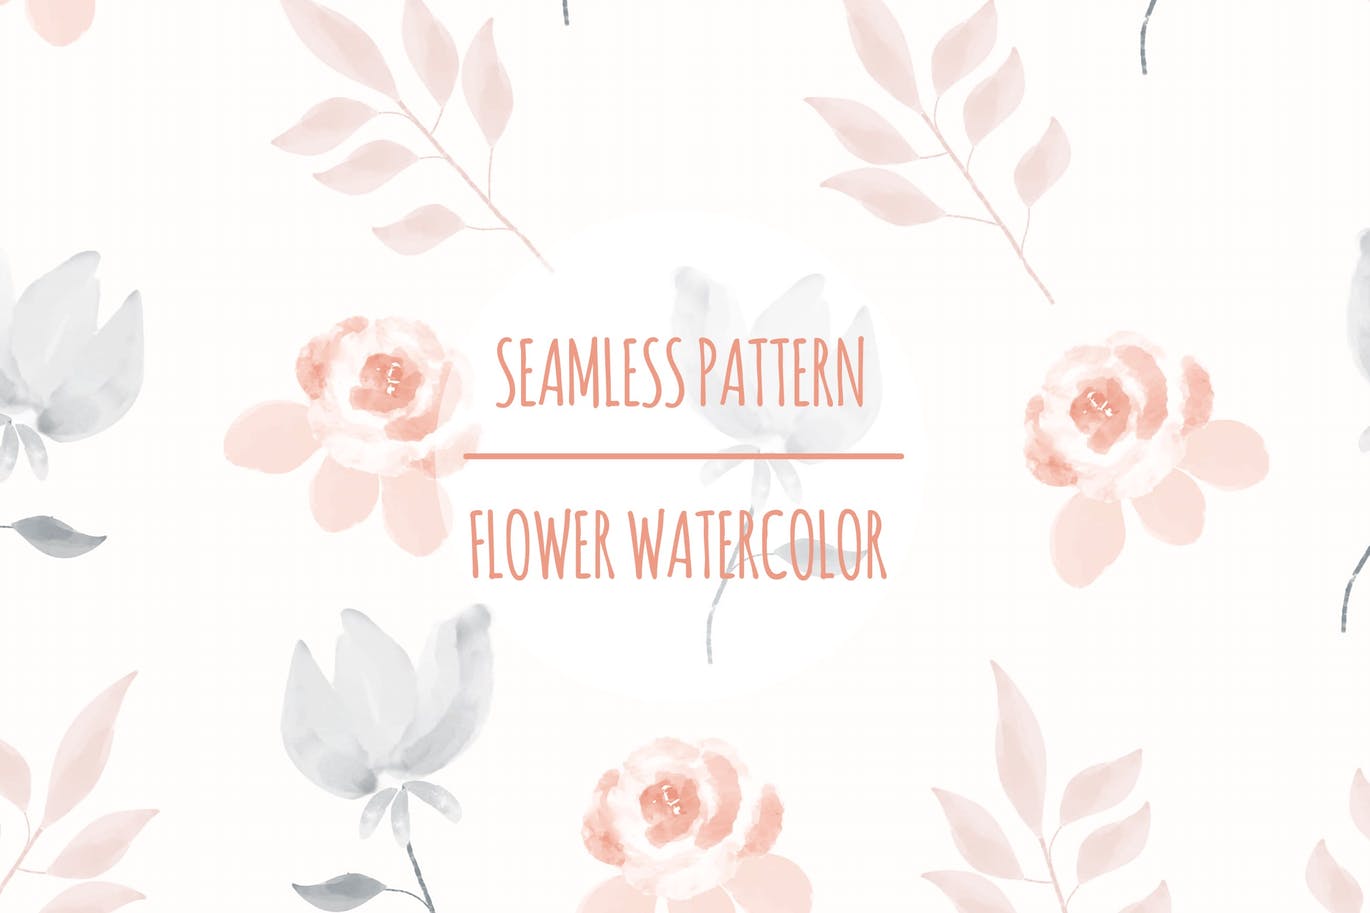 花卉水彩无缝图案矢量素材 Flower Watercolor – Seamless Pattern 图片素材 第1张